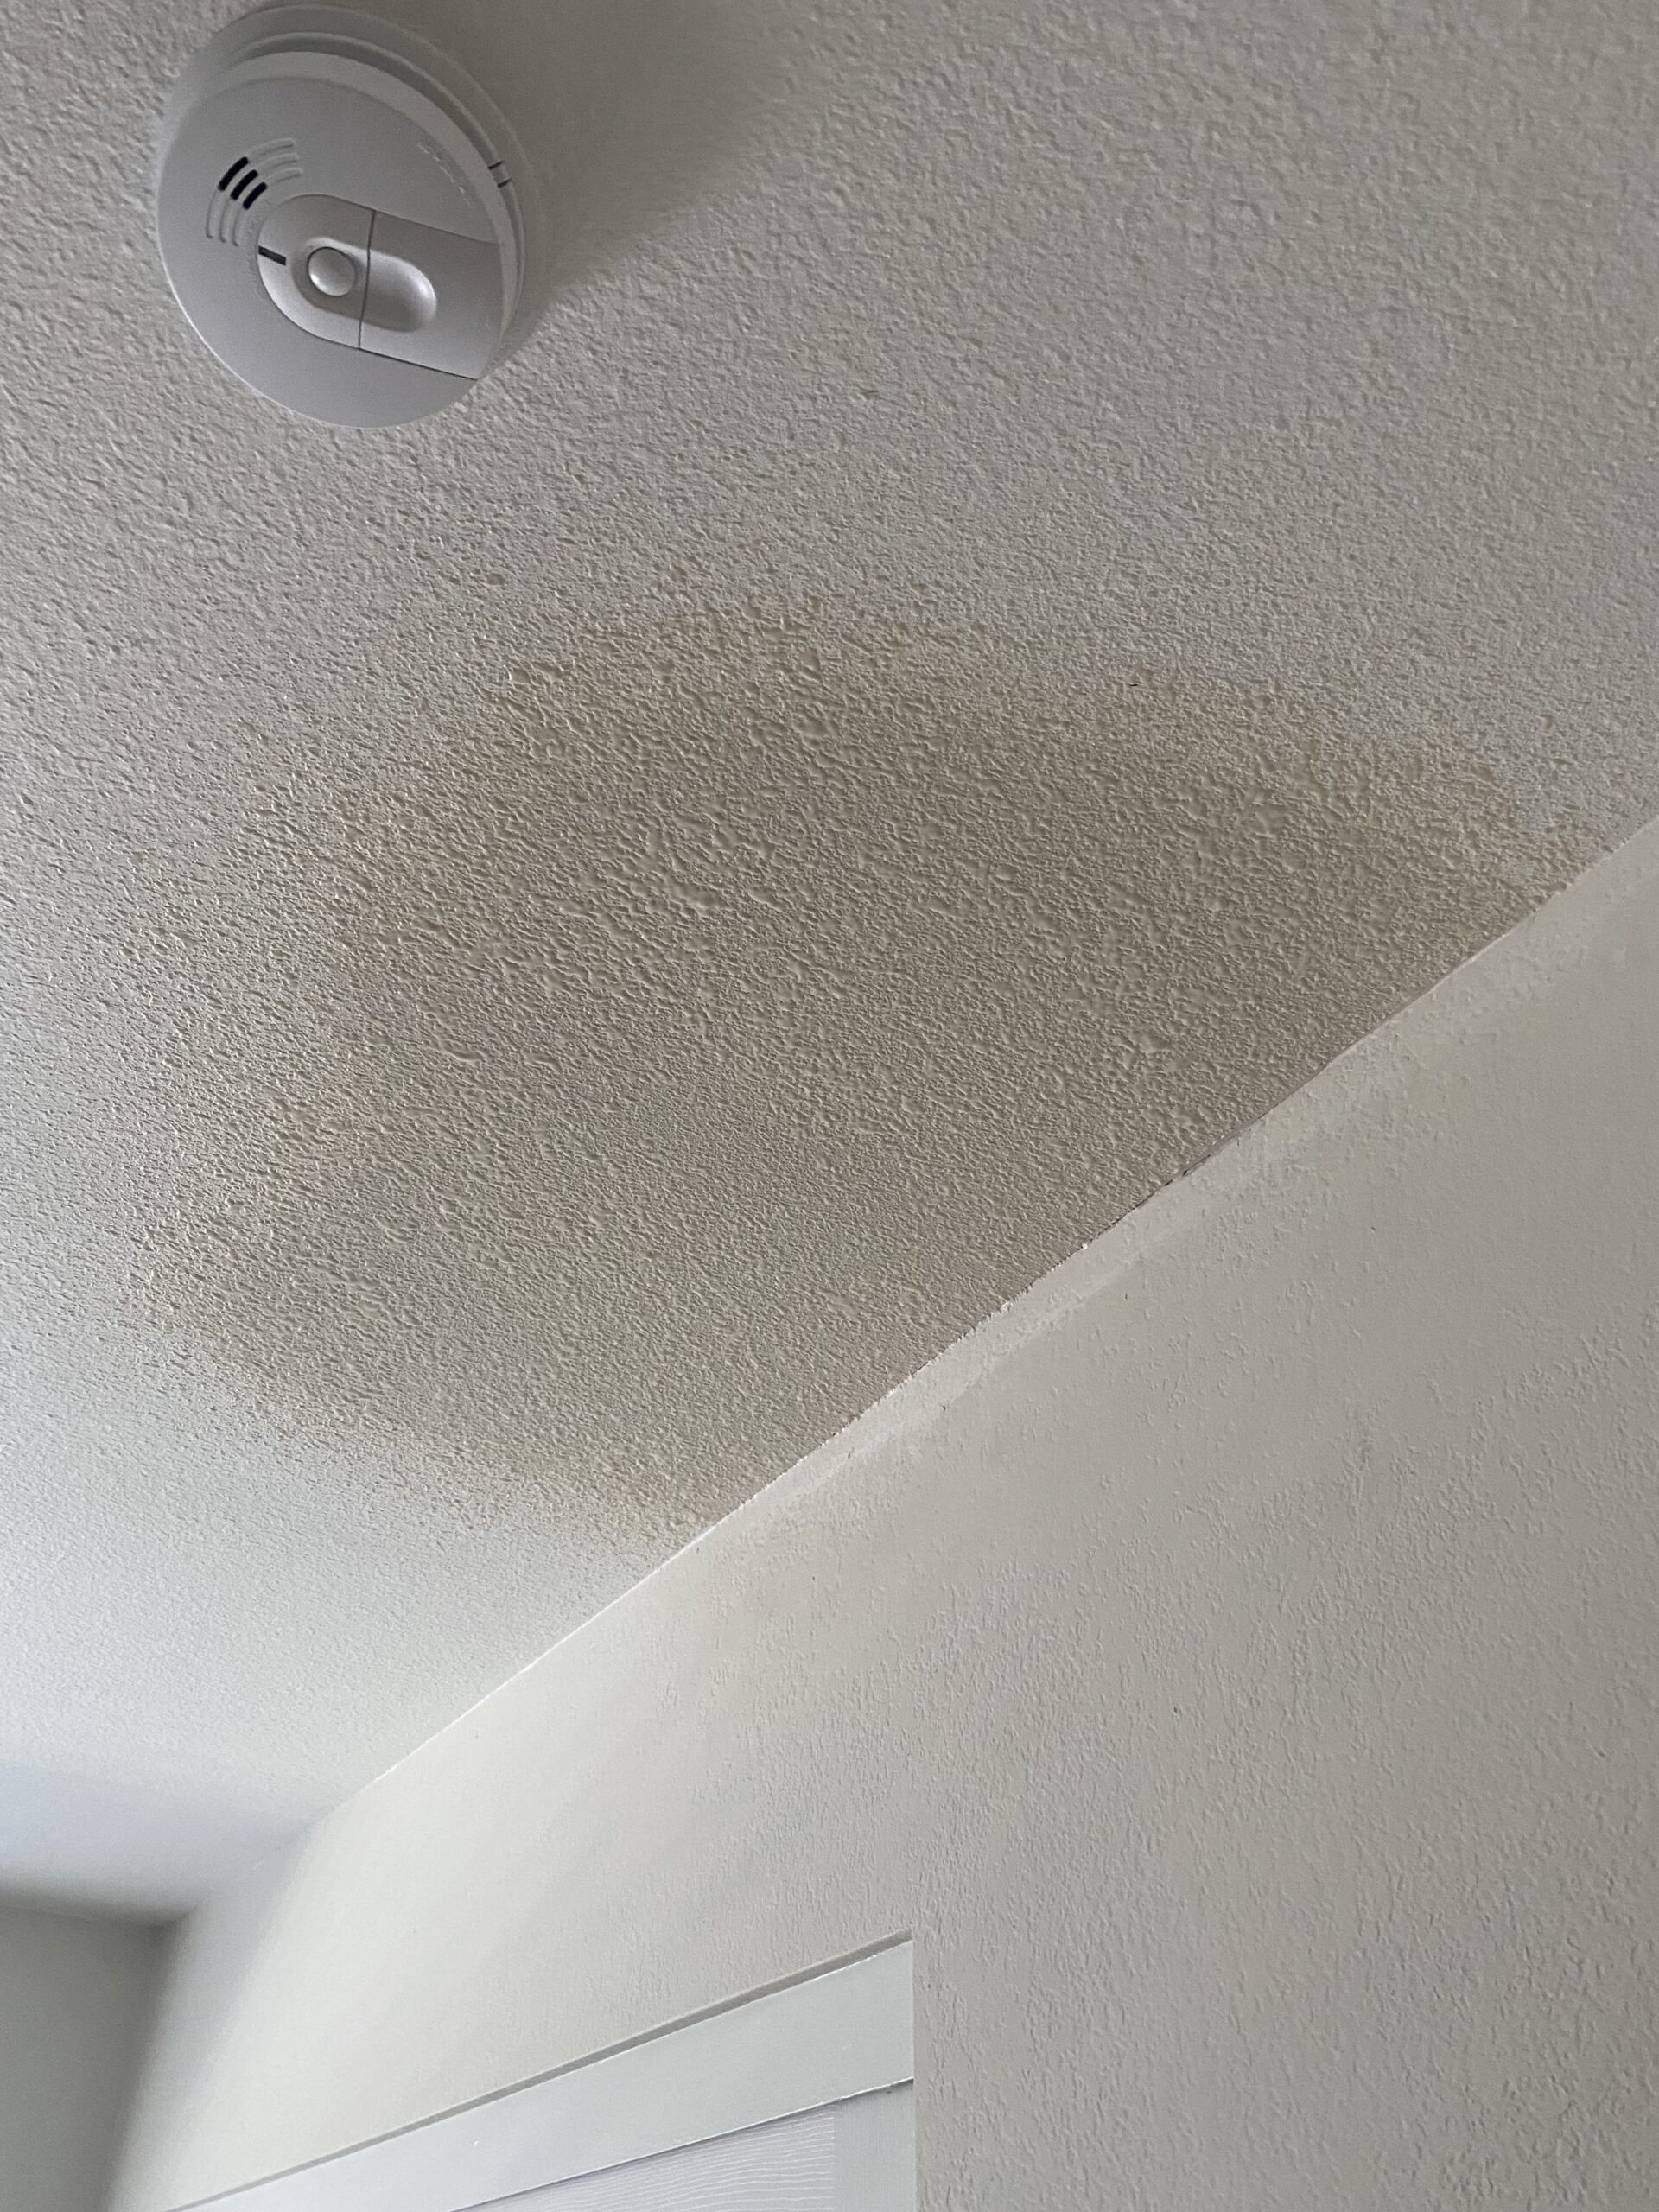 Bedroom ceiling drywall repair after